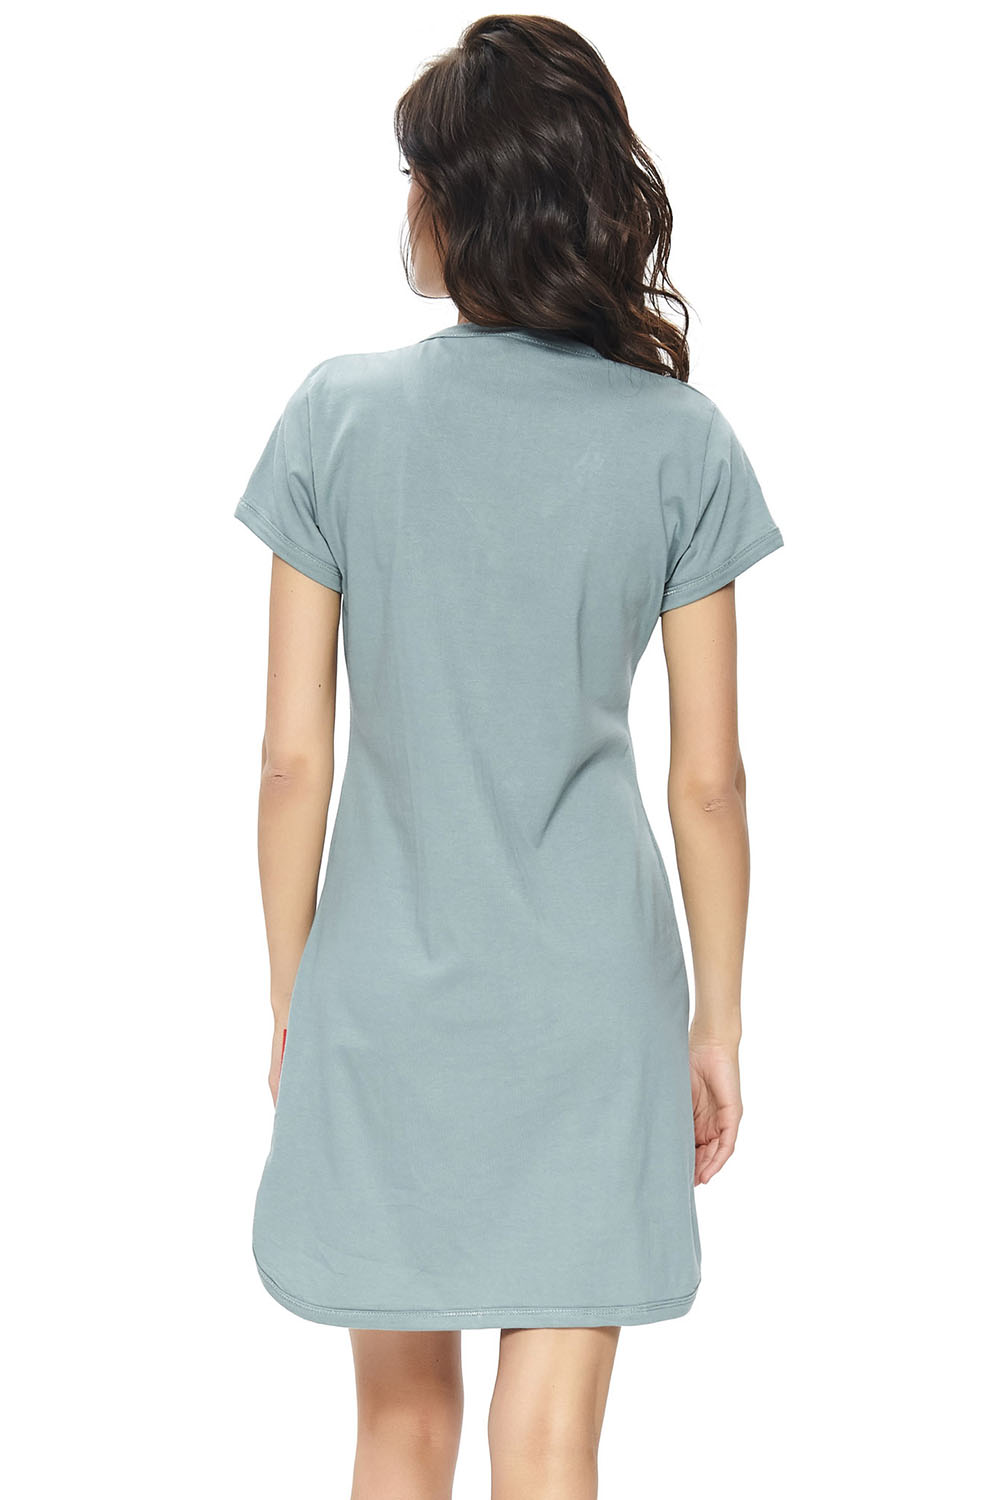 Doctor Nap Dn-nightwear TCB.9505 - koszulka ciążowa oraz do karmienia